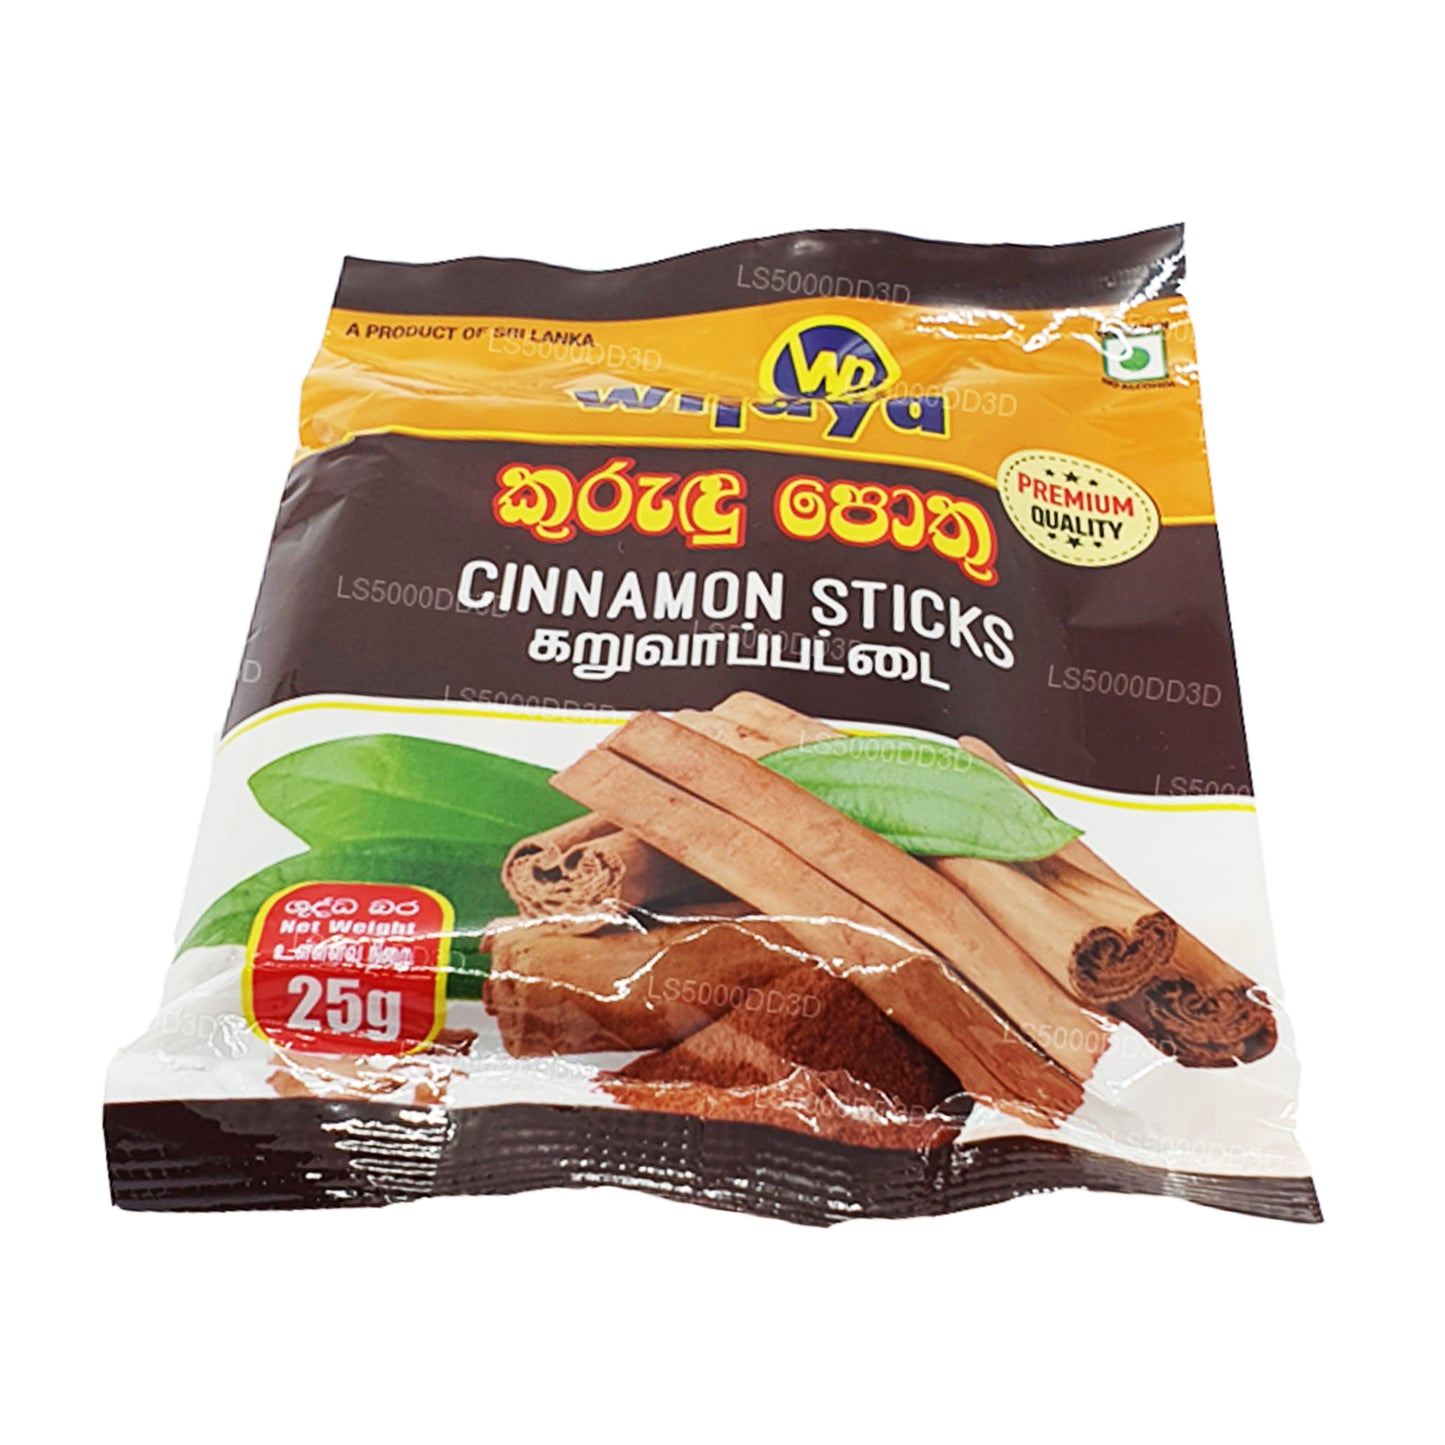 Wijaya Ceylon Cinnamon Sticks (25g)